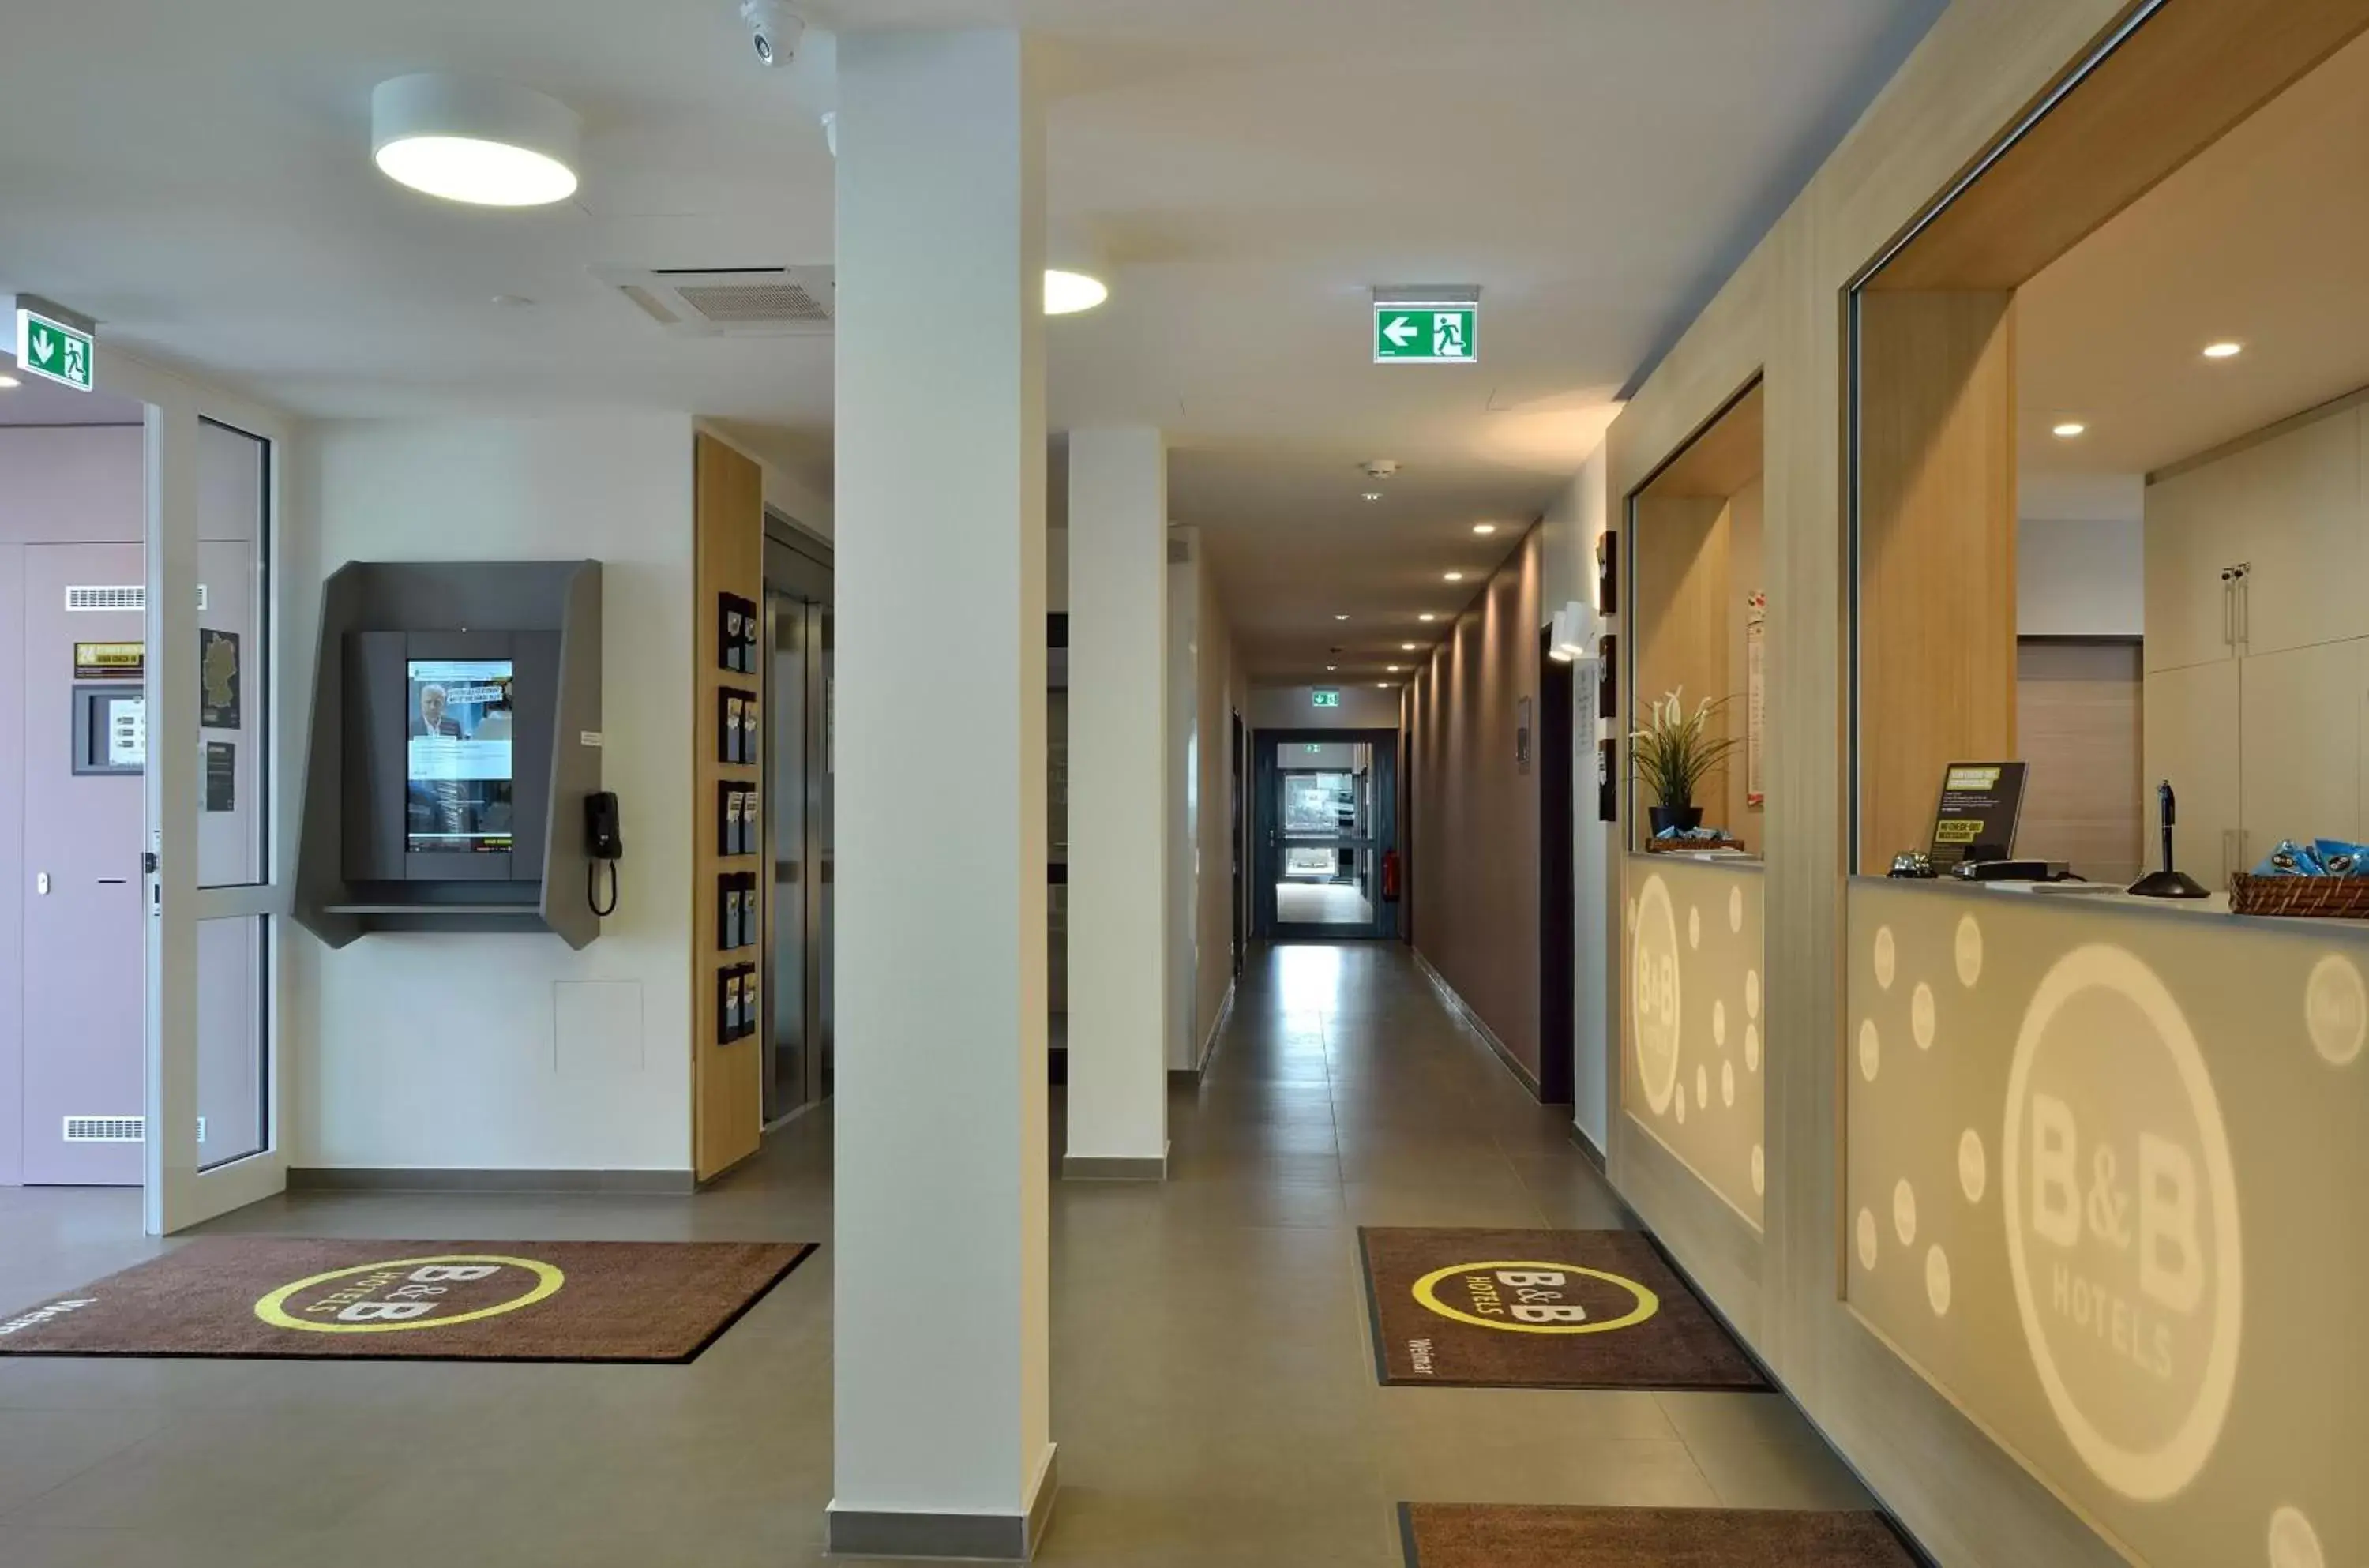 Lobby or reception, Lobby/Reception in B&B Hotel Weimar